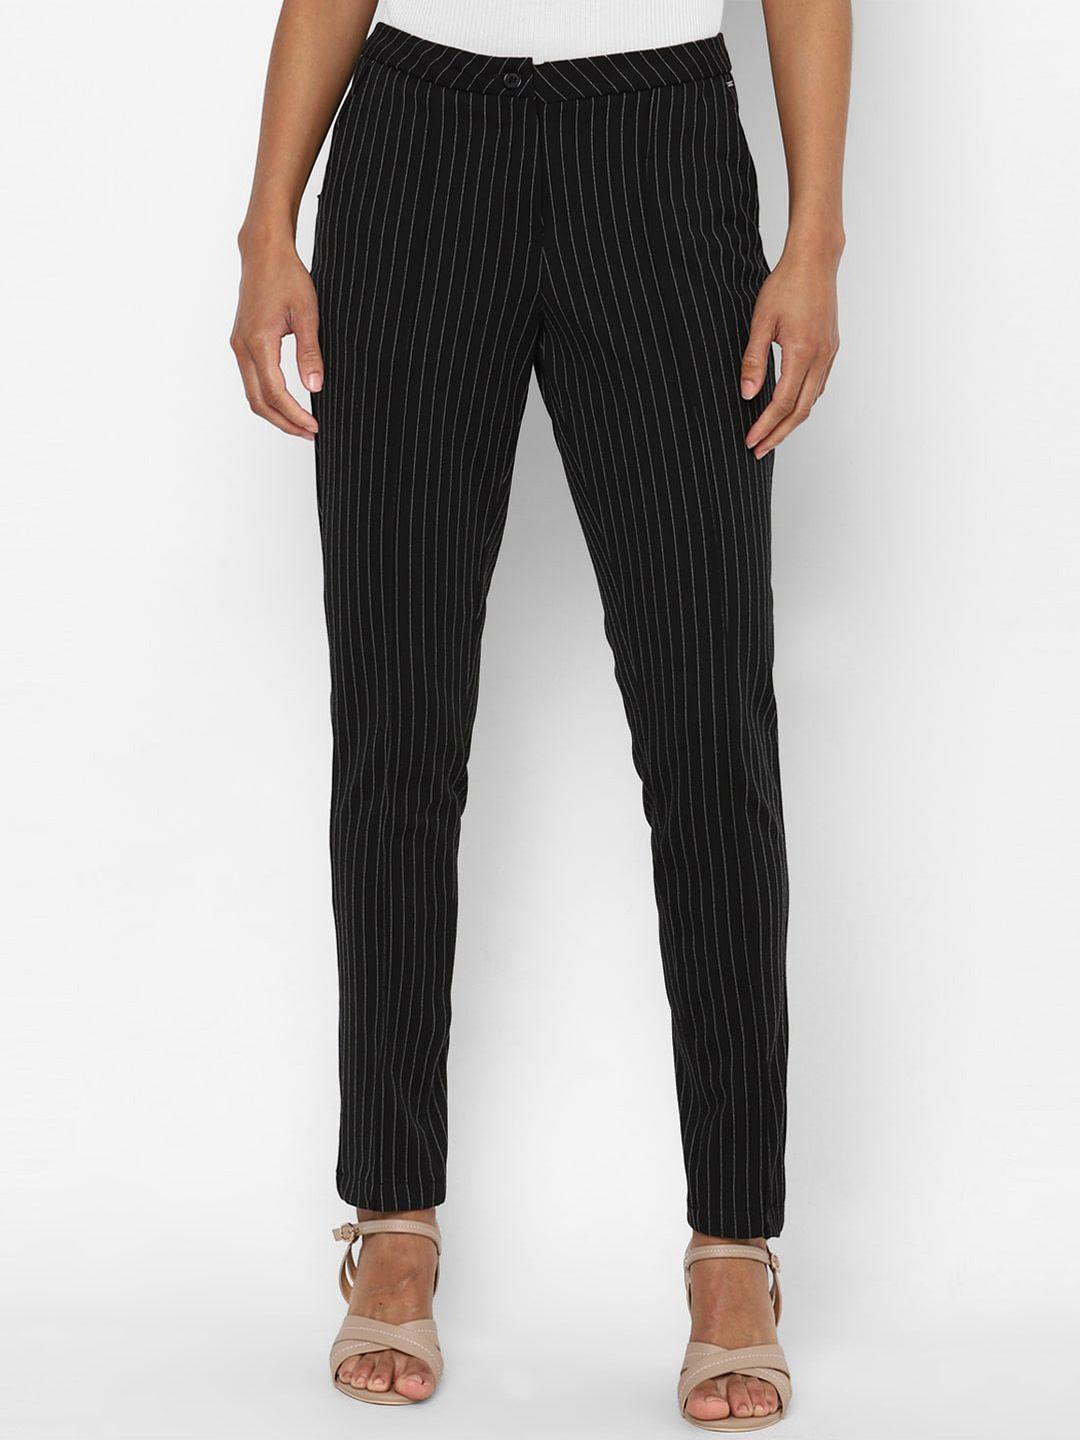 allen solly woman women black striped trousers